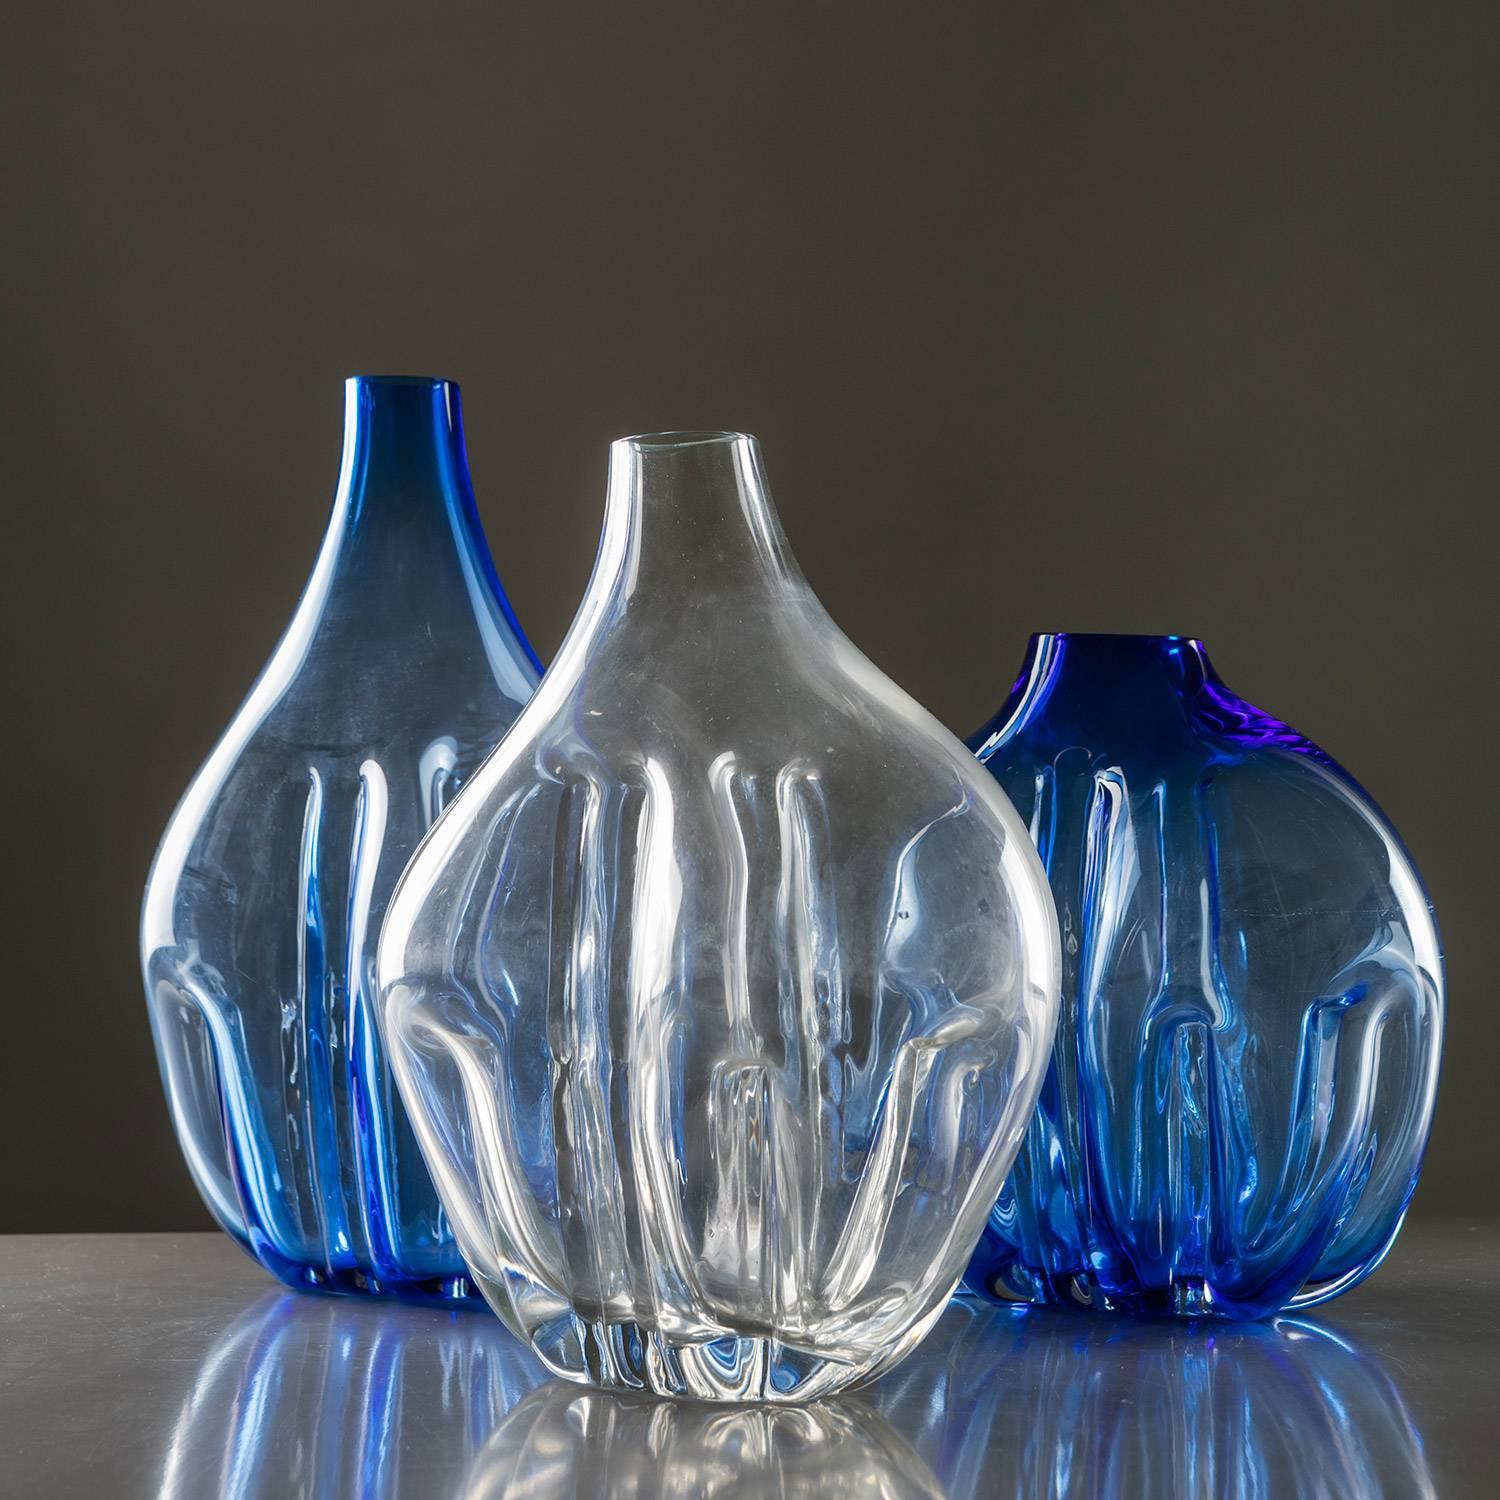 Hervorragende Vasen aus Murano-Glas von Toni Zuccheri.
Das Stück ist Teil einer experimentellen Sammlung mit Kristallglas, das Zuccheri in seltsam geformte Formen bläst und dann mit einer Zange bearbeitet.
Die Größe bezieht sich auf das größte